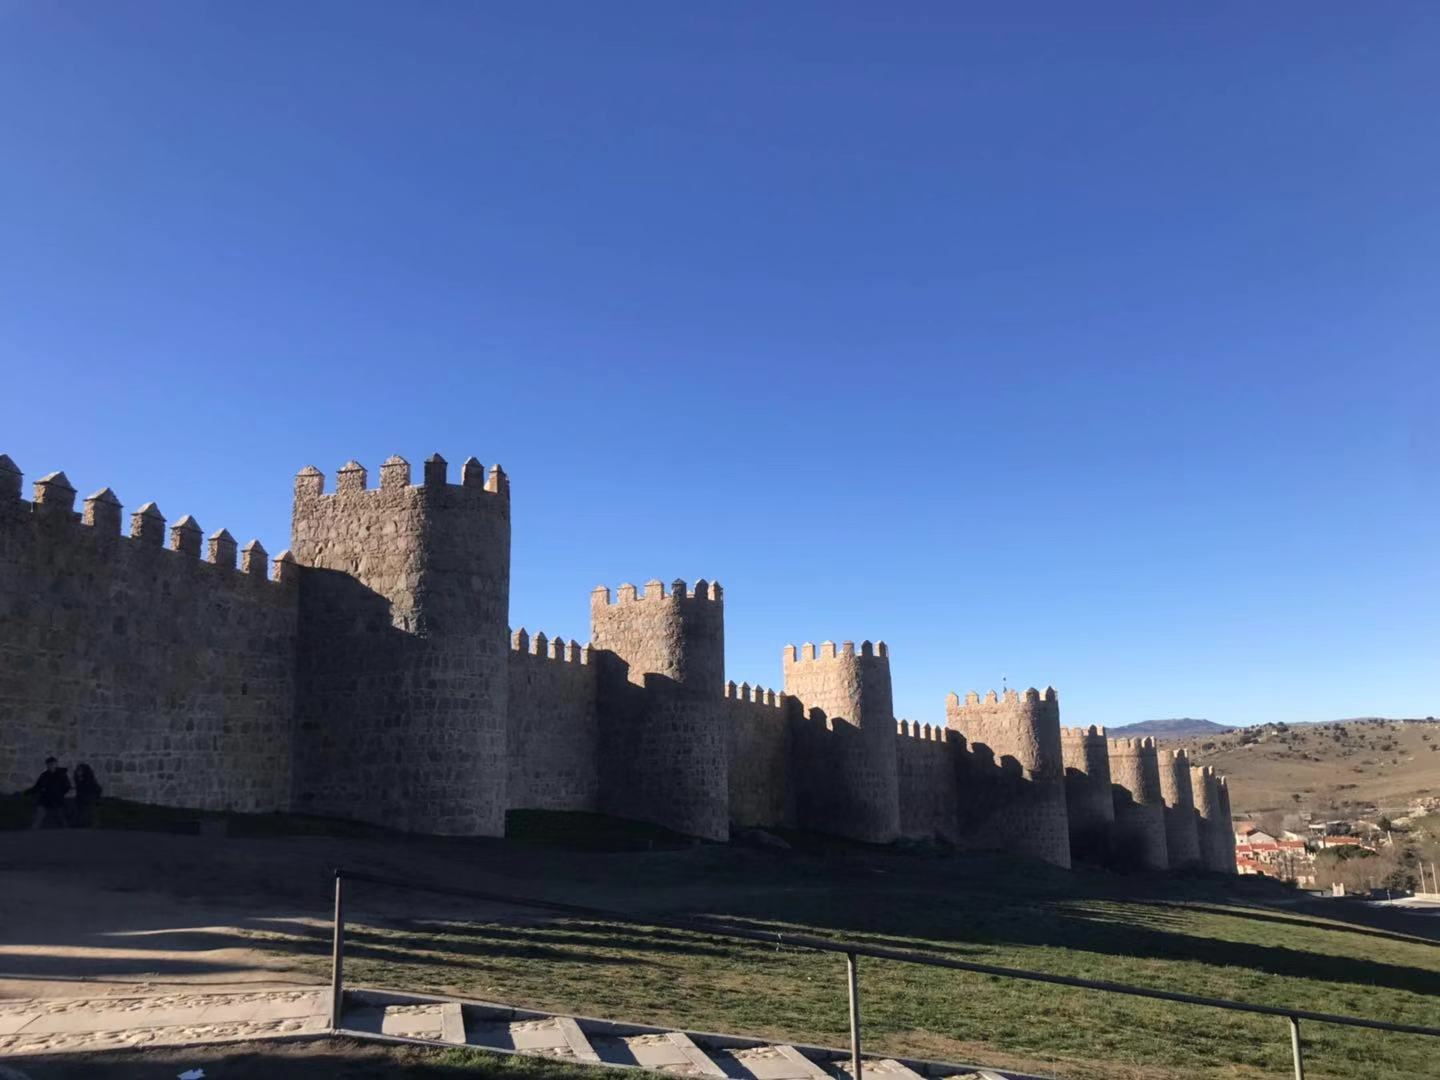 阿维拉古城墙建于11世纪，是该城市中最主要的历史见证。阿维拉的城墙应该是西班牙各古城中最著名、最雄伟